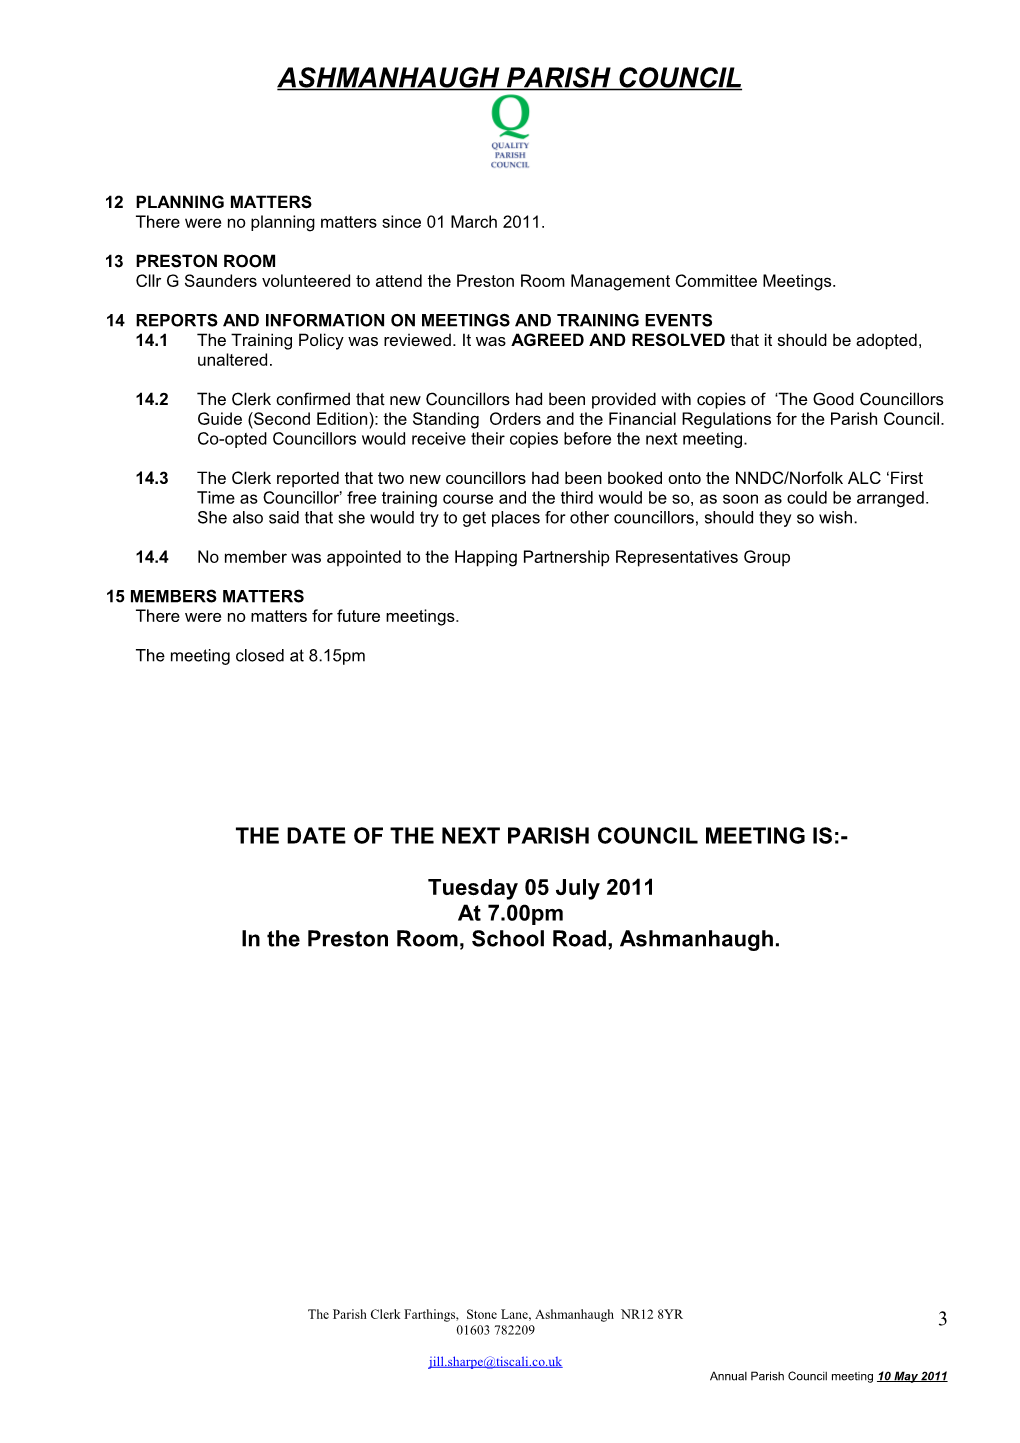 Minutes of the Ashmanhaugh Parish Council